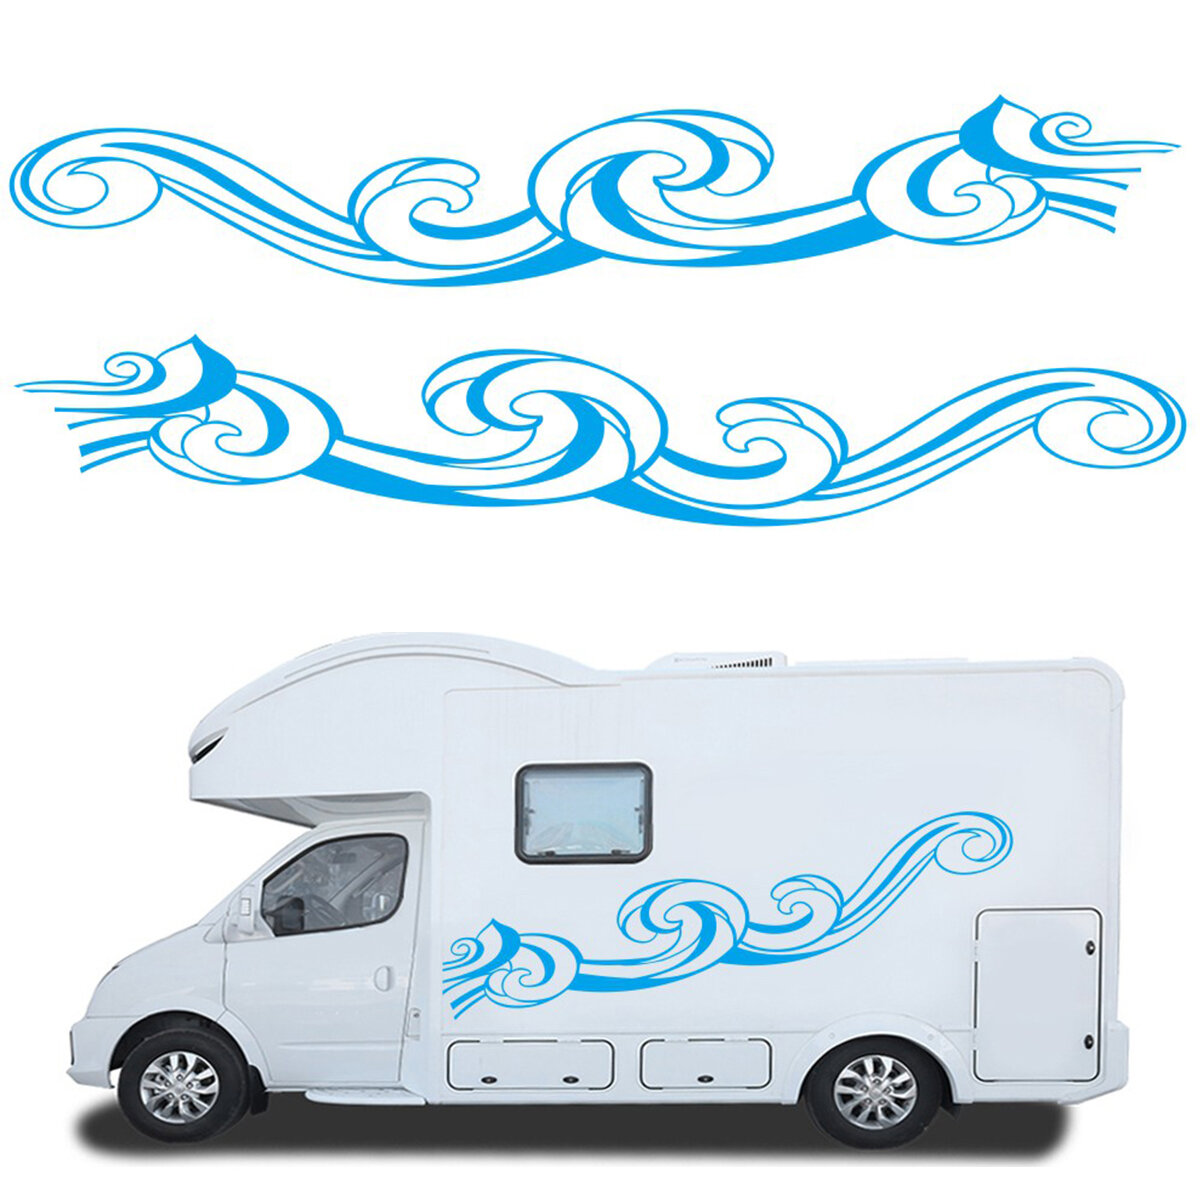 Camper Graphics Stickers voor auto Camper Camper Caravan